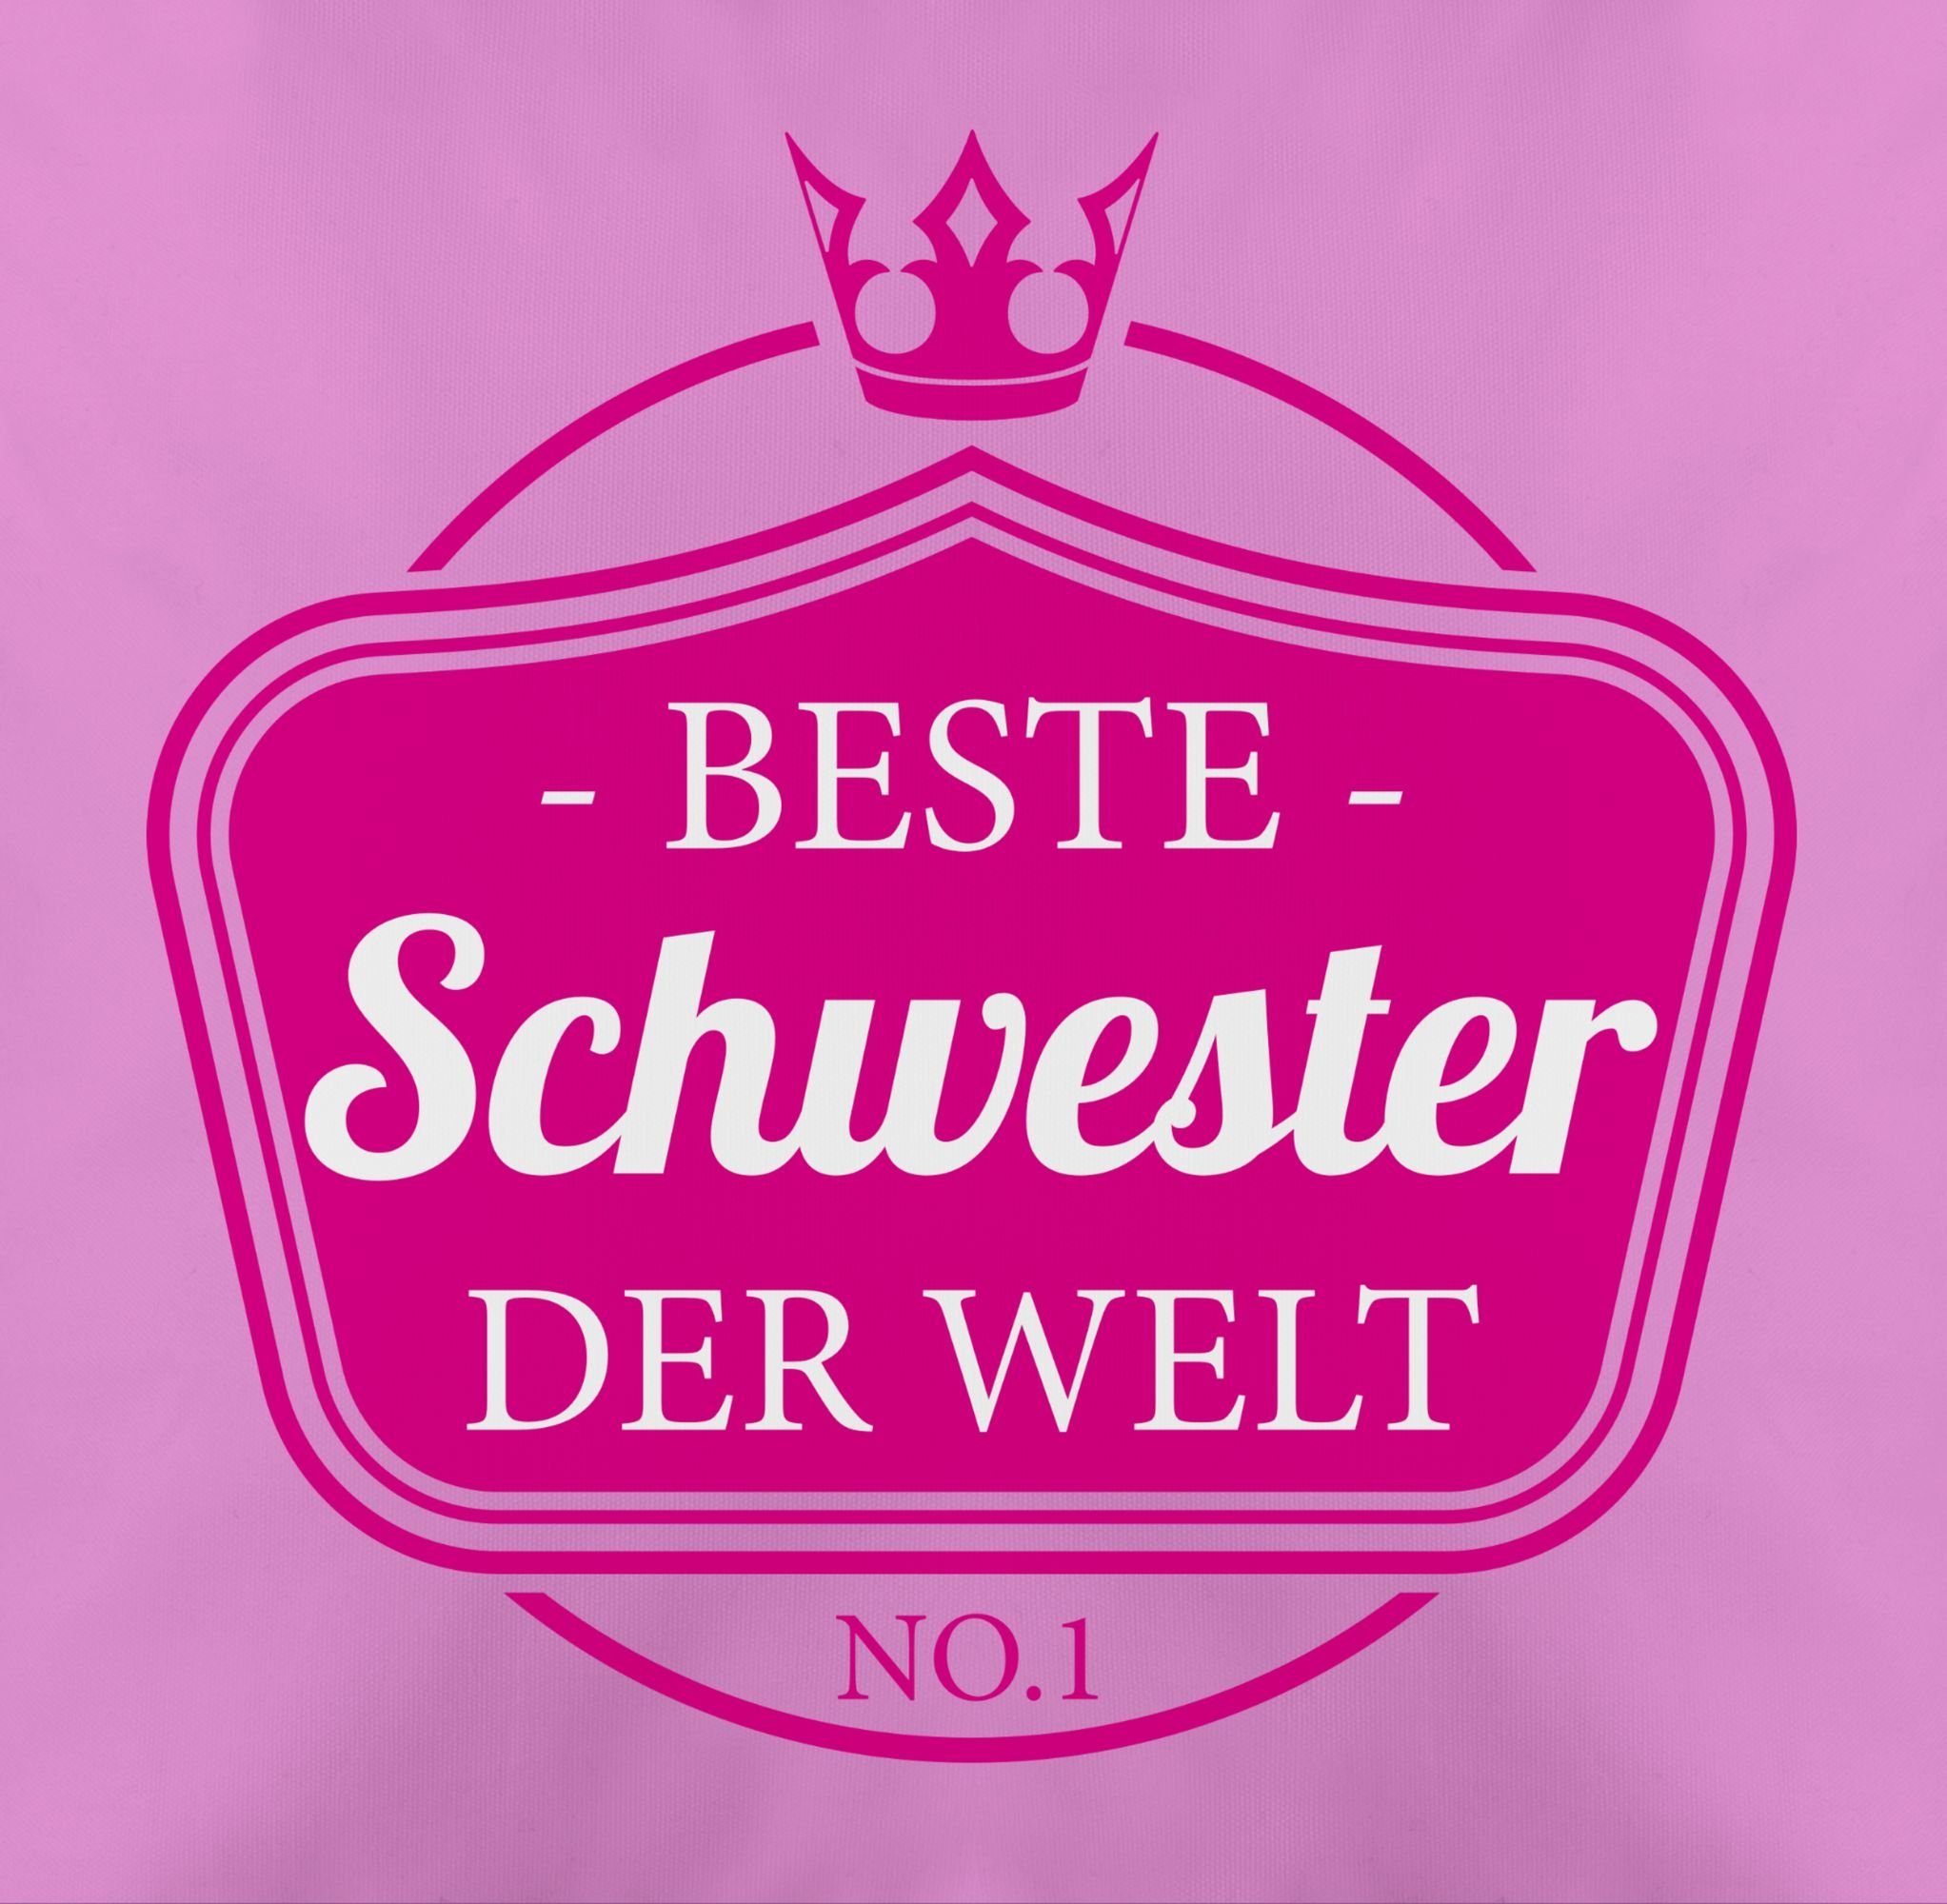 Schwester Welt 1 der Beste Shirtracer Dekokissen No.1, Pink Schwester